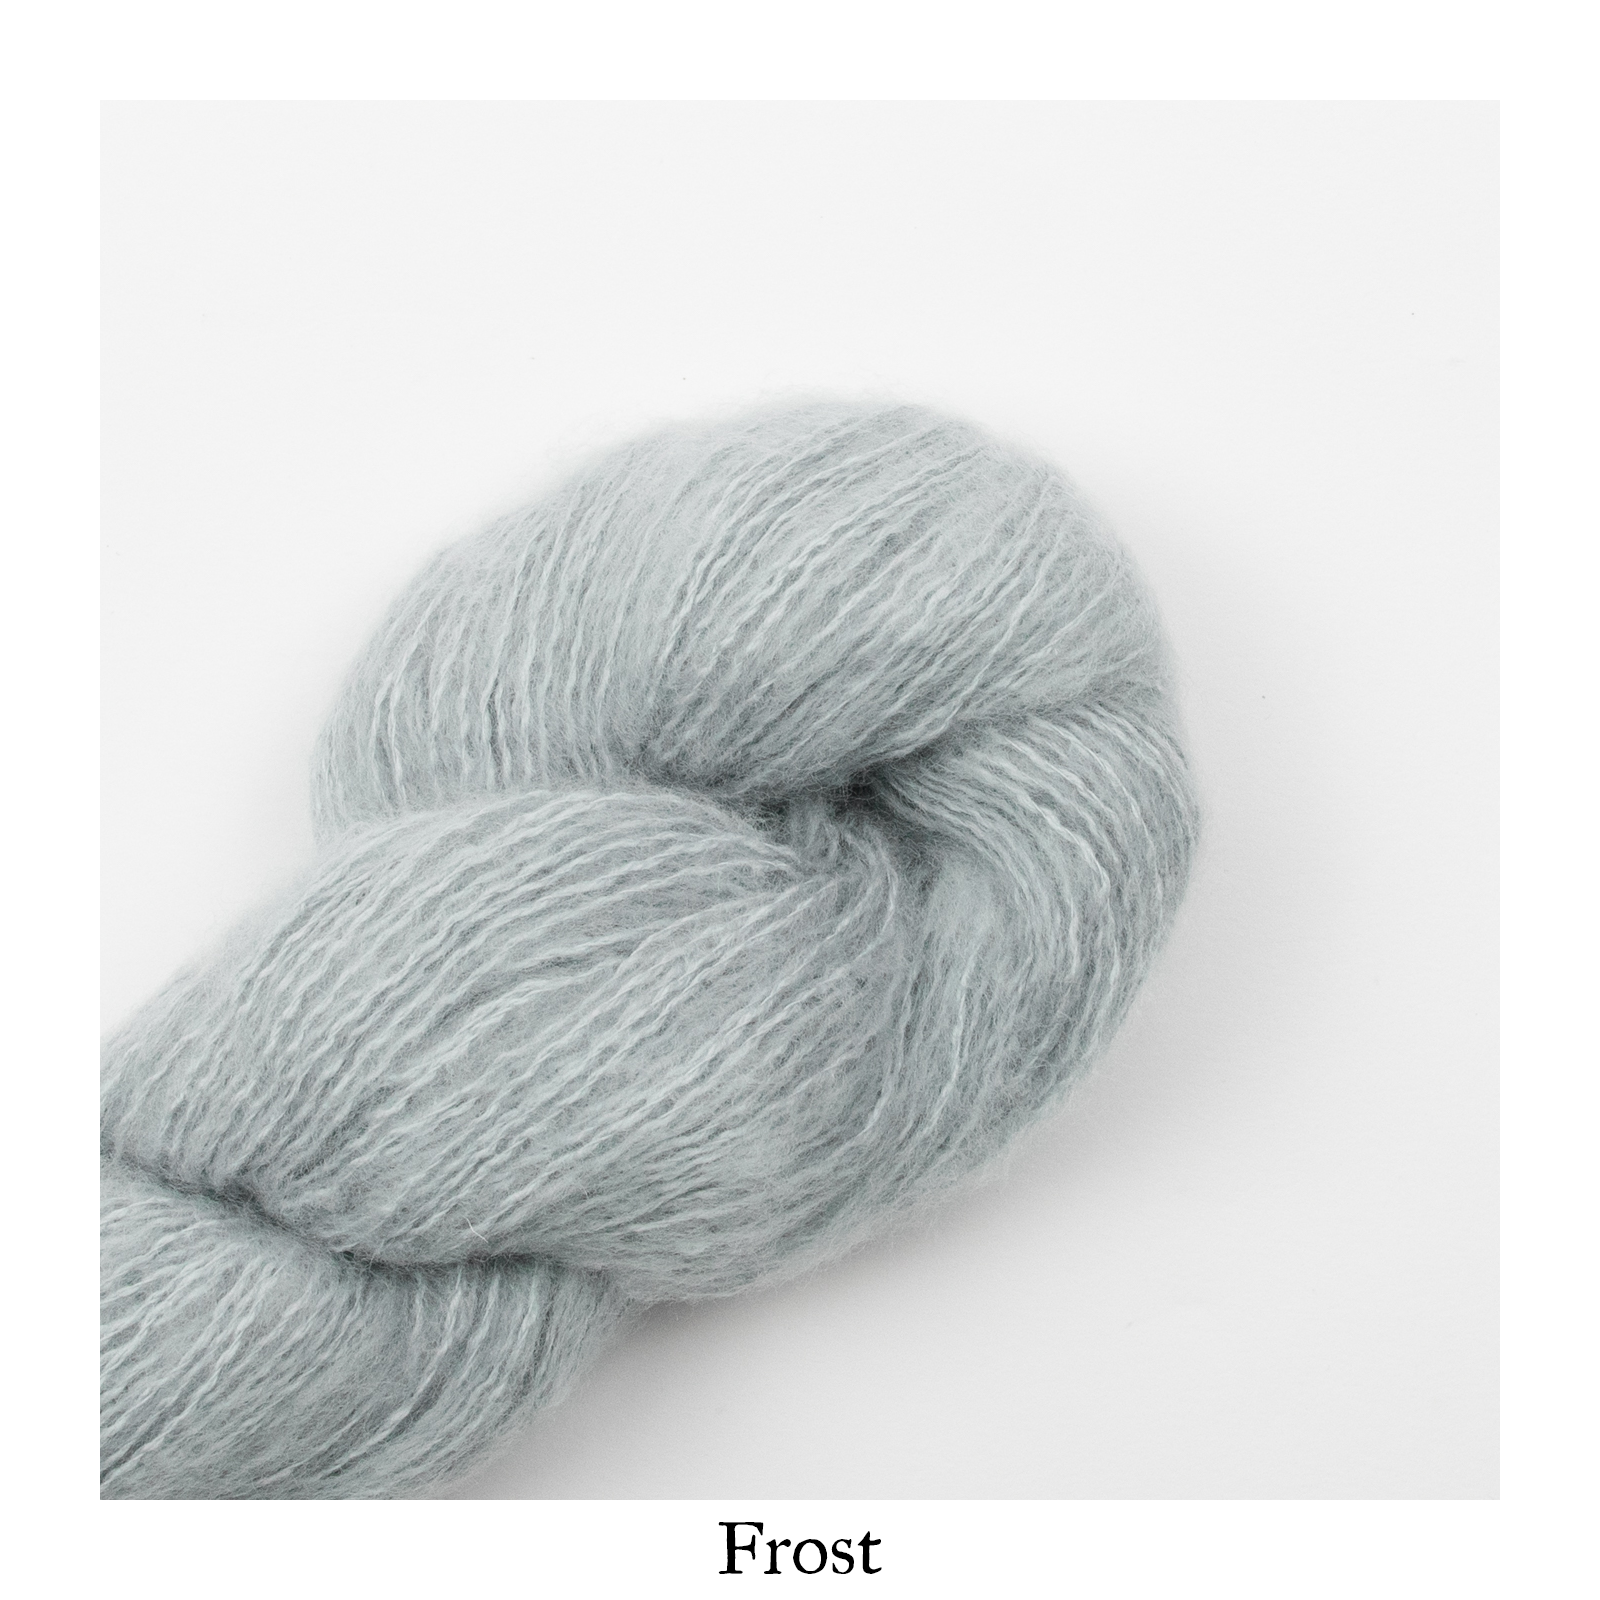 Frost W Merino Wool Bra